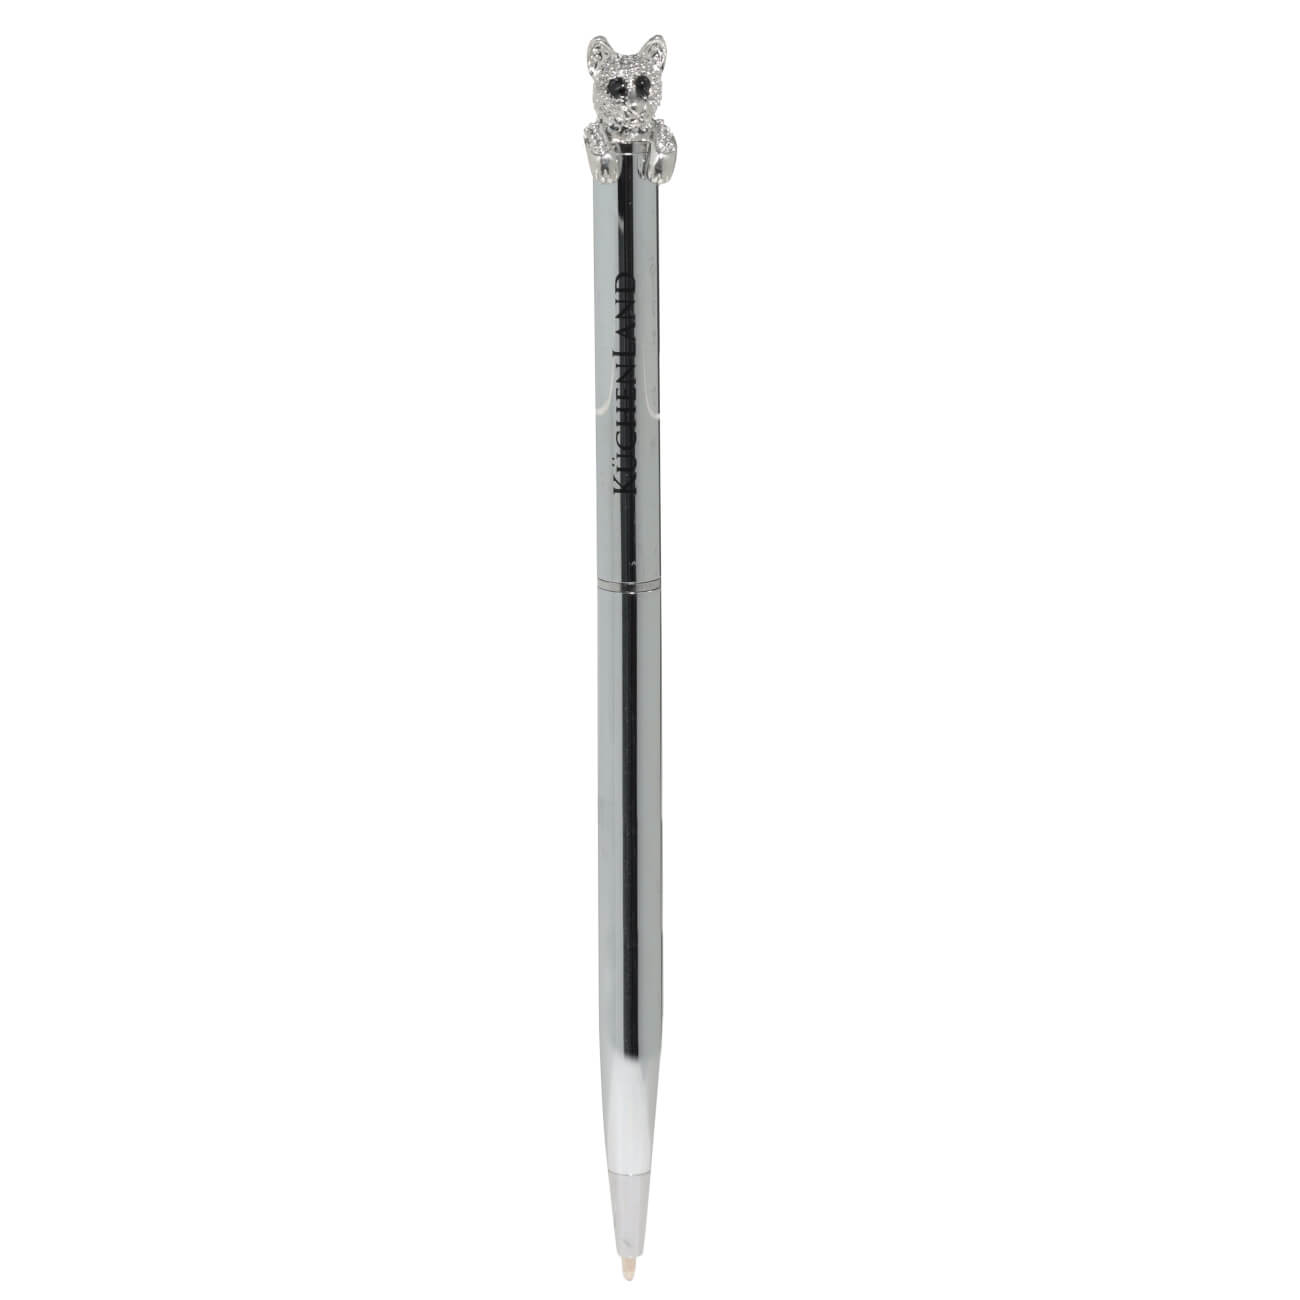 Ручка шариковая, 15 см, с фигуркой, сталь, серебристая, Гепард, Draw figure